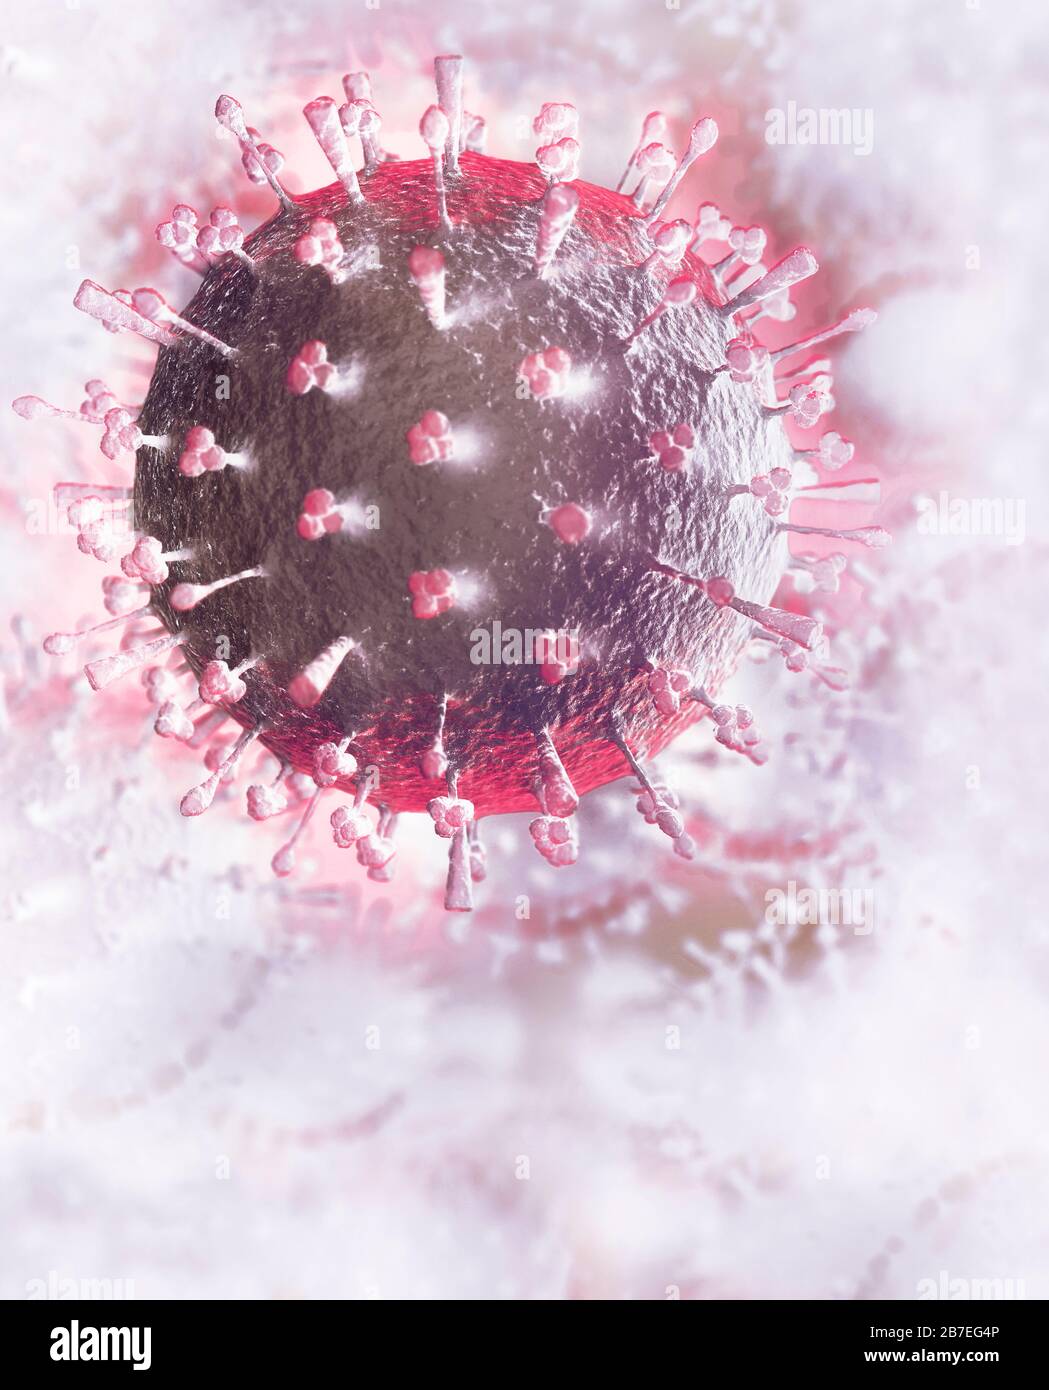 Coronavirus, COVID-19, renderizado artístico. Ilustración conceptual 3D de partículas de virus de corona sobre fondo blanco brillante. Propagación del virus, la epidemia y. Foto de stock